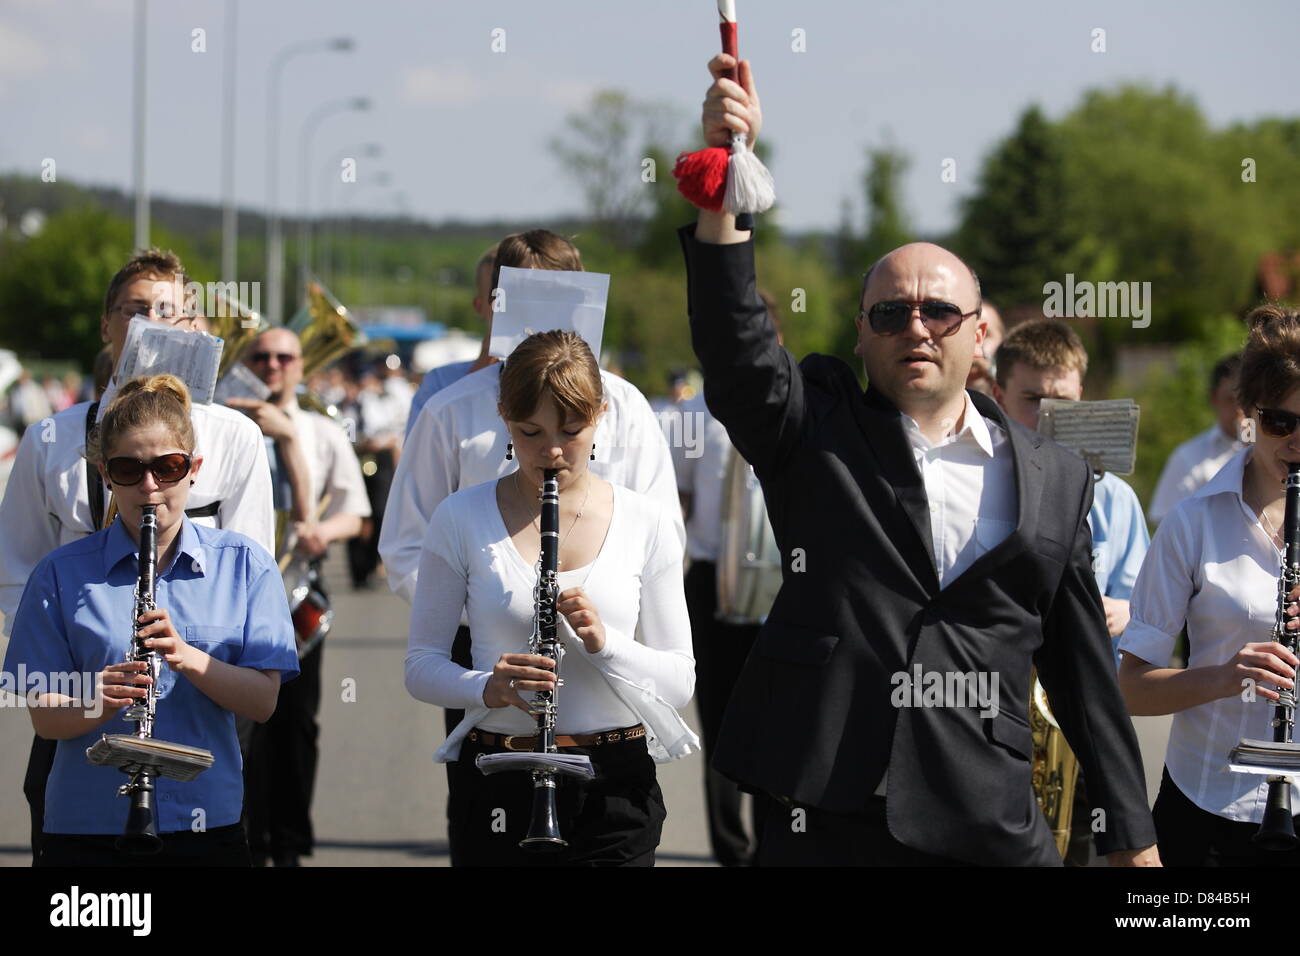 Kolbudy, Polen 19. Mai 2013 1. kaschubischen und Kociewian Brass Bands Battle.  Teilnehmer parade von der Schule in Kolbudy City-Stadion, wo sie die rivalisierenden Spiel 5 verschiedene Hymnen Stockfoto